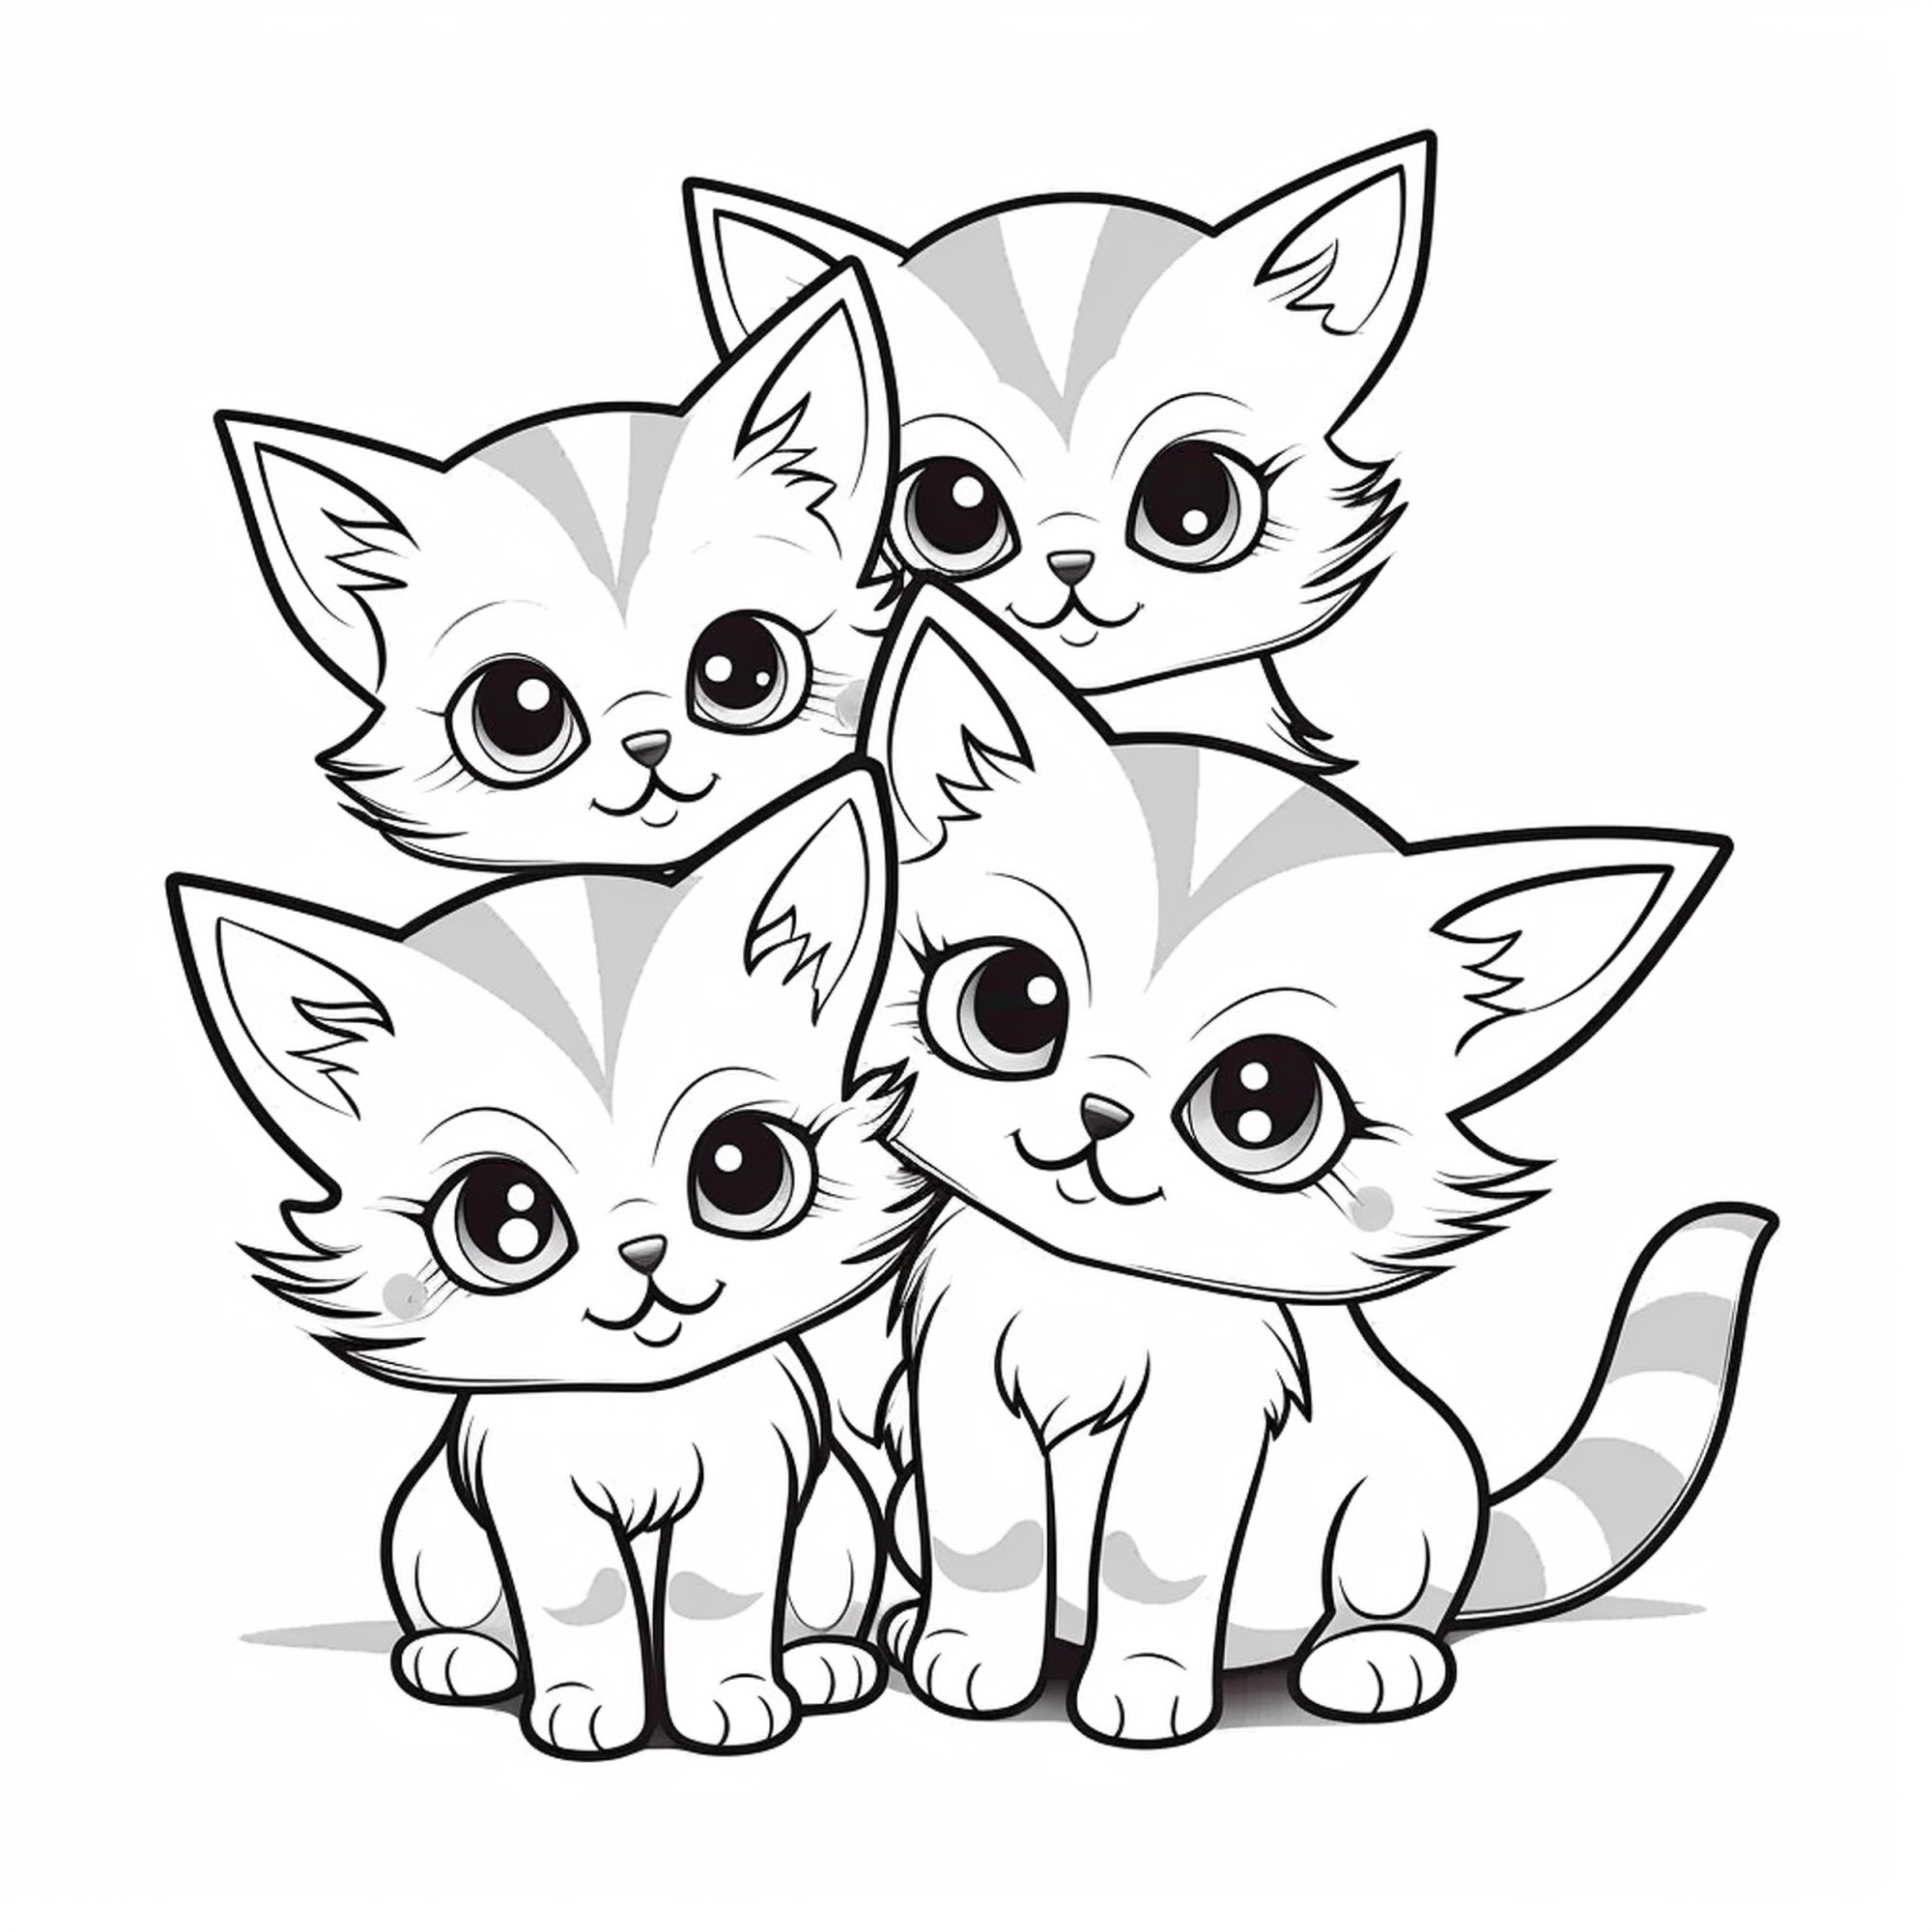 Раскраска для детей: четыре котенка